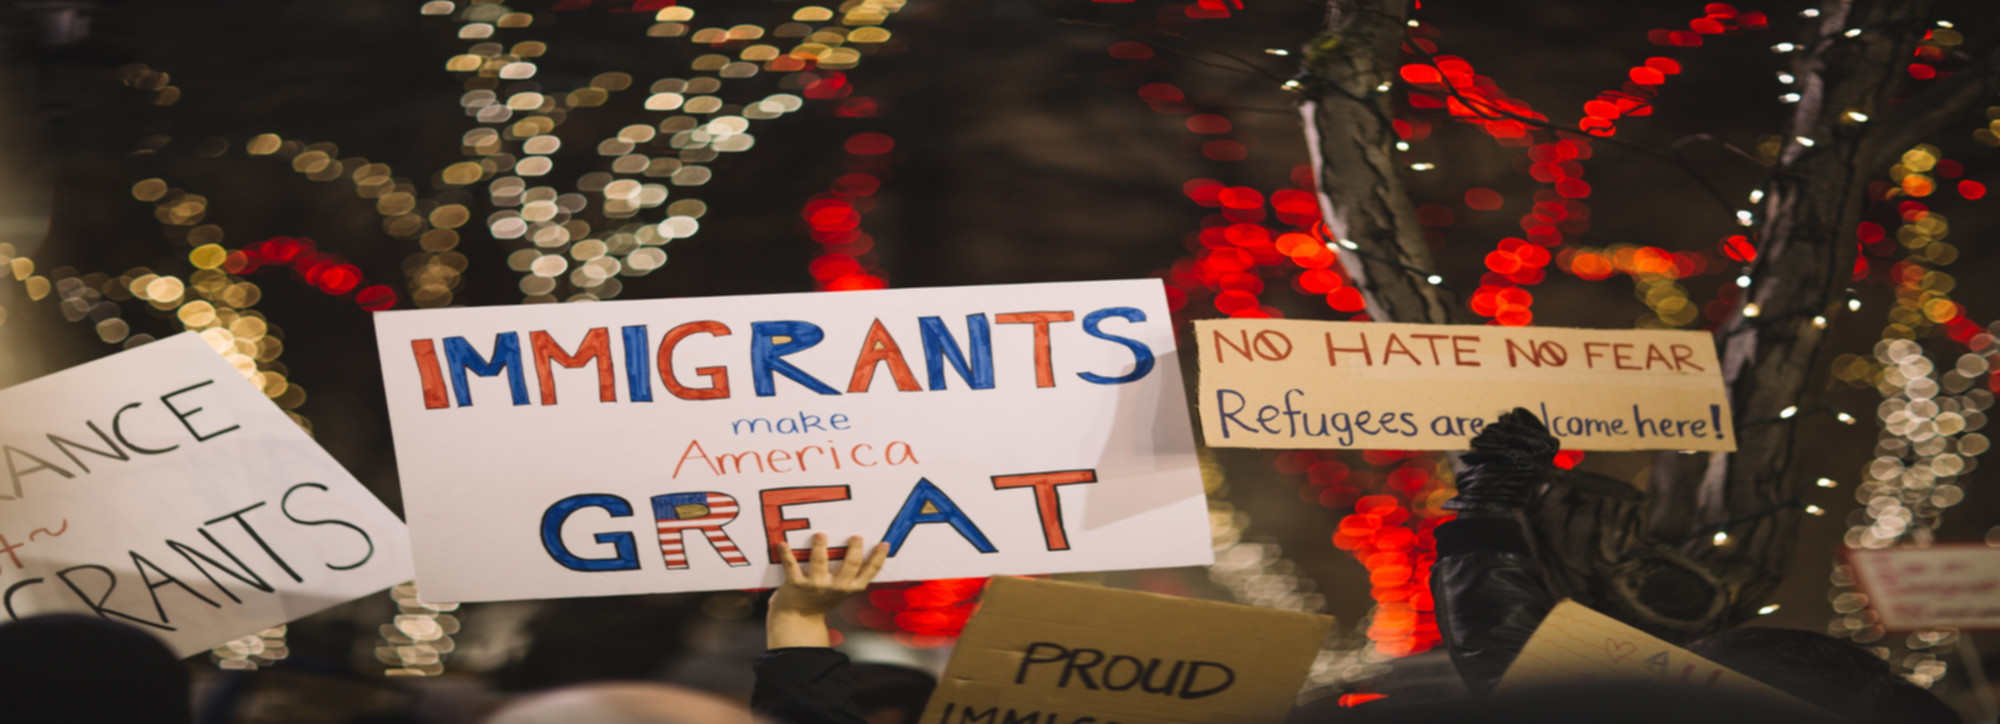 Immigrants Make America Great Again